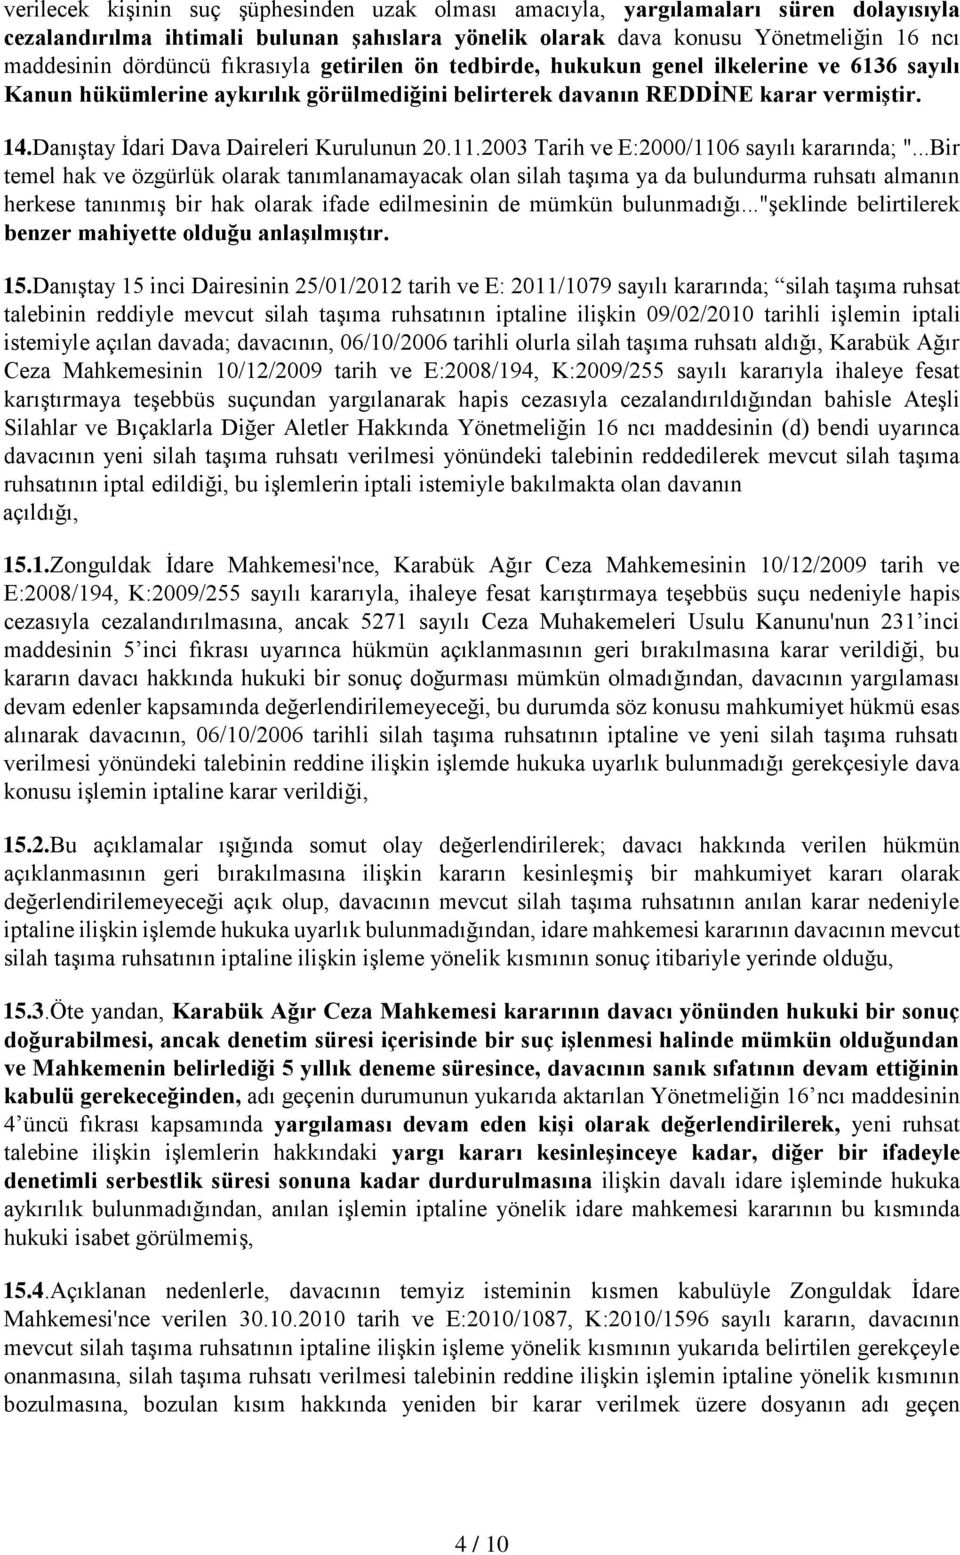 Danıştay İdari Dava Daireleri Kurulunun 20.11.2003 Tarih ve E:2000/1106 sayılı kararında; ".